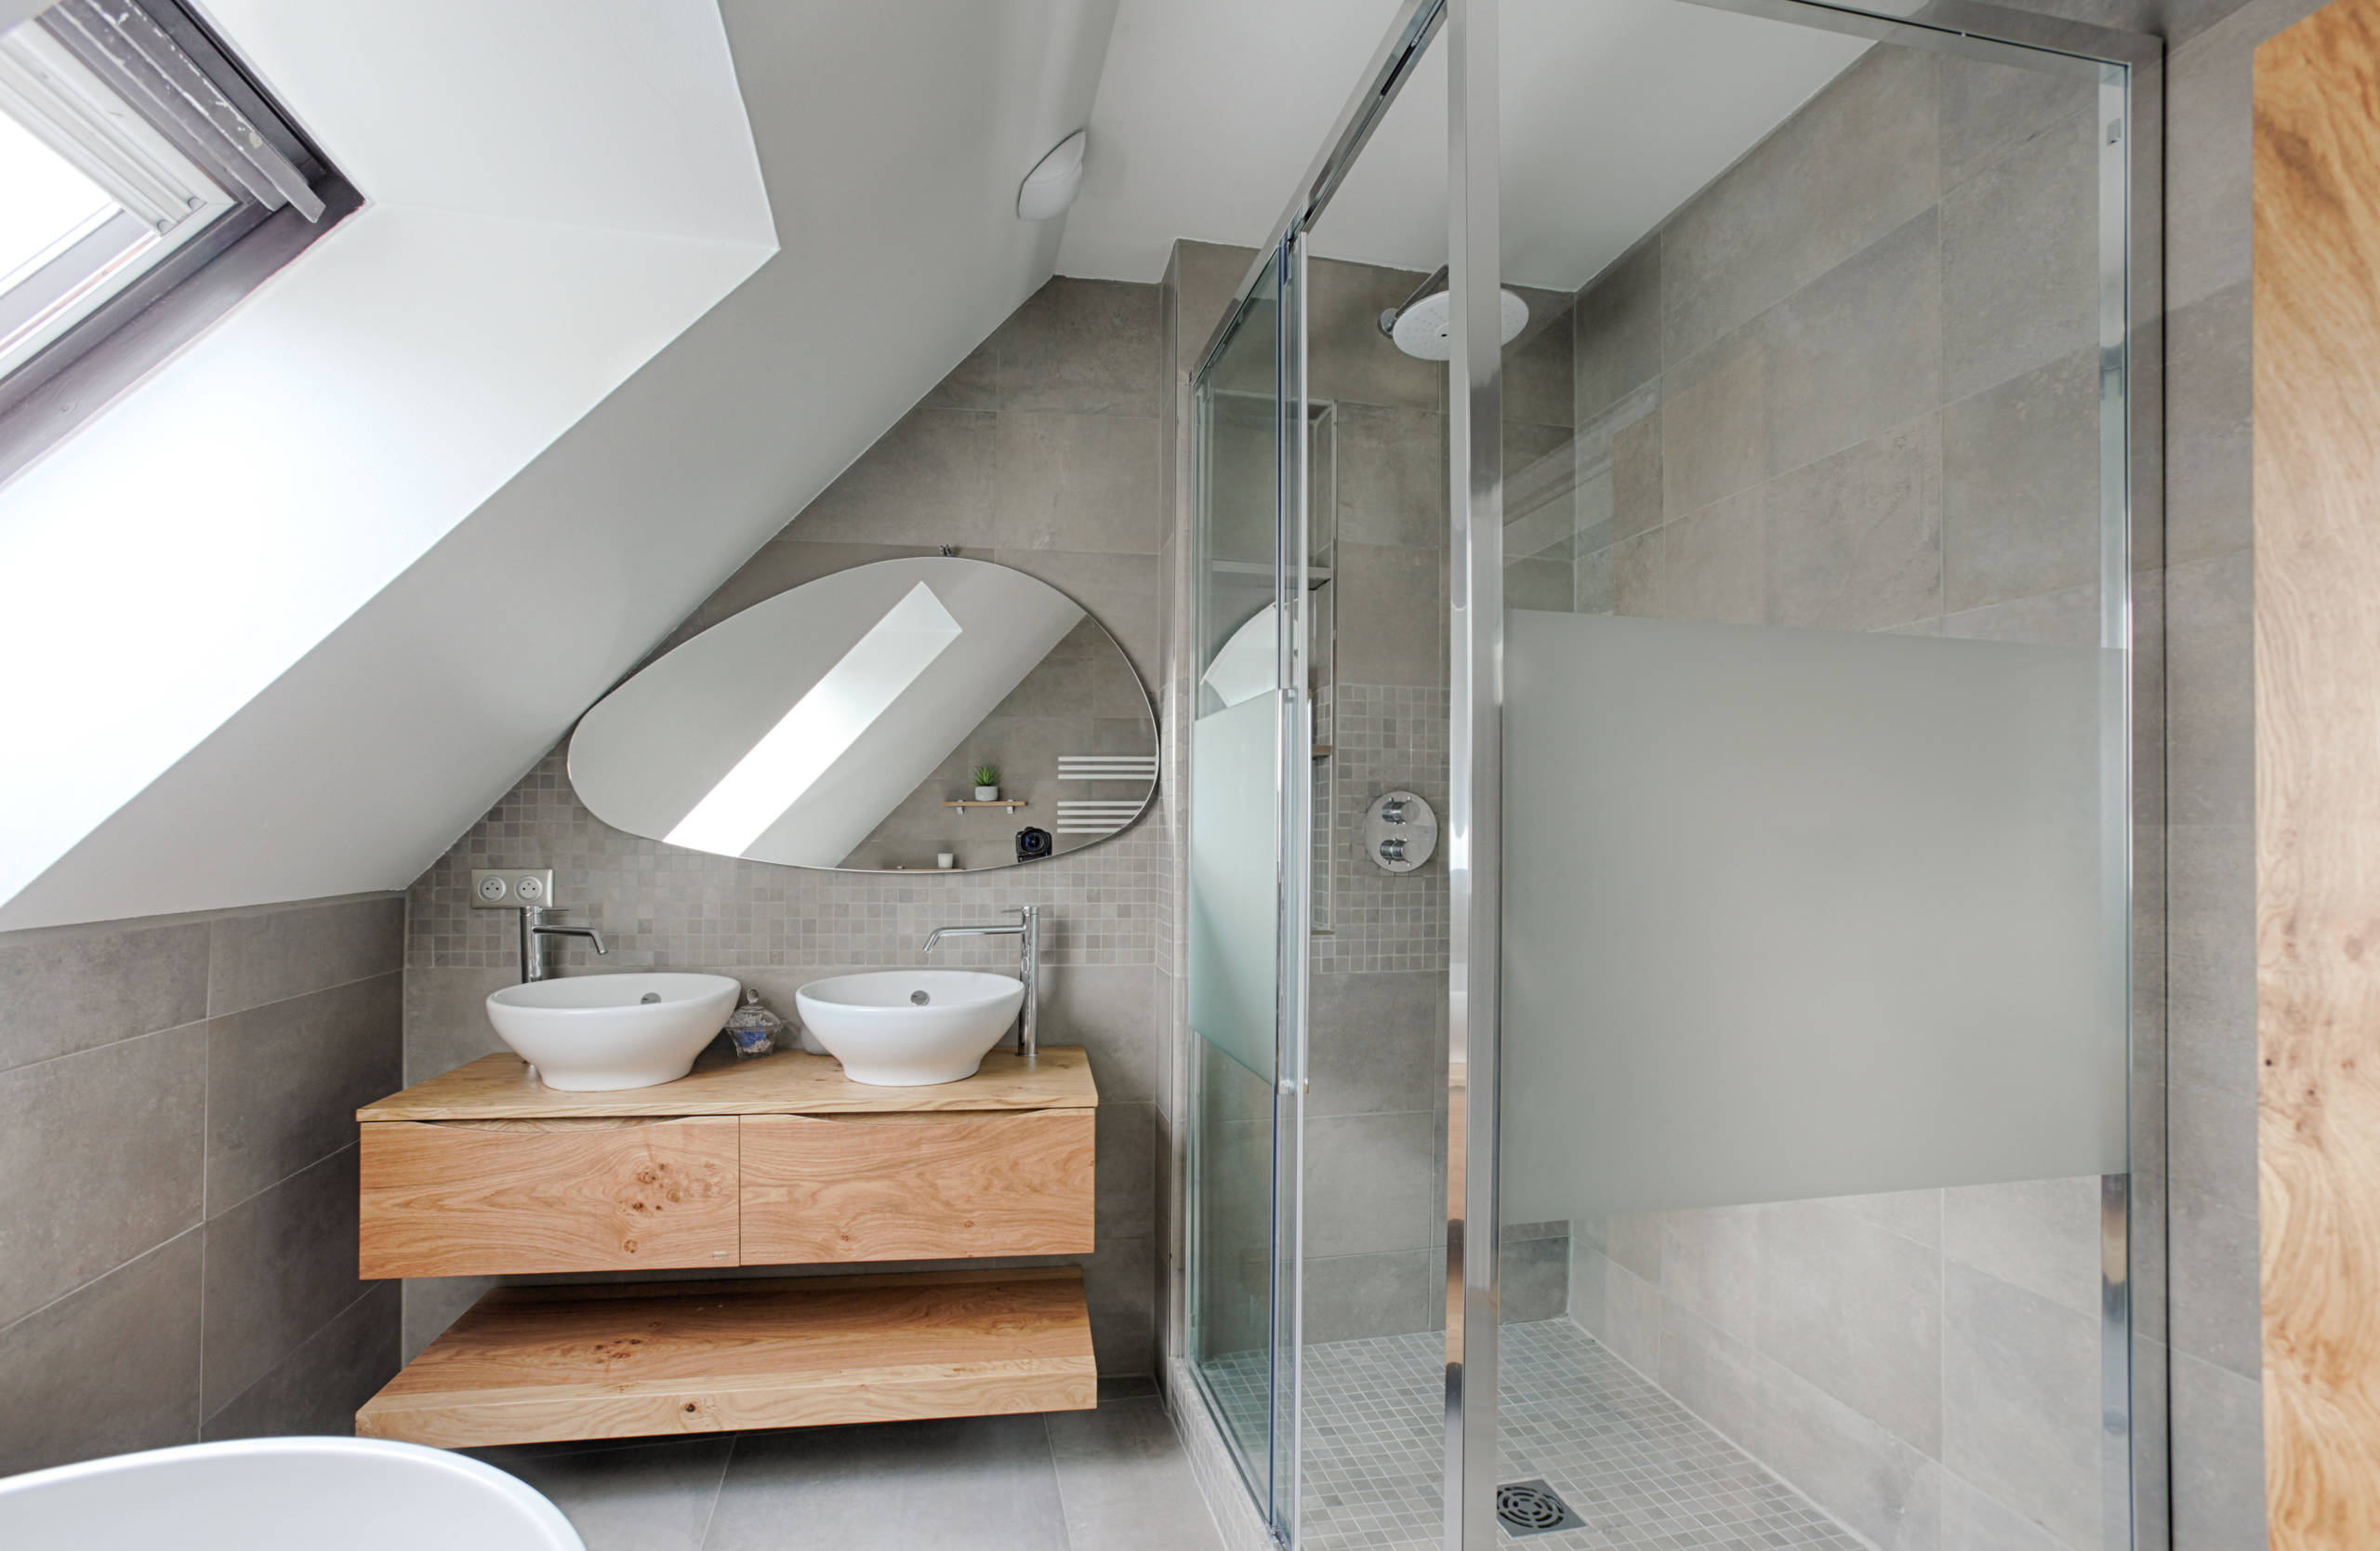 Salle de bain Moderne en gris